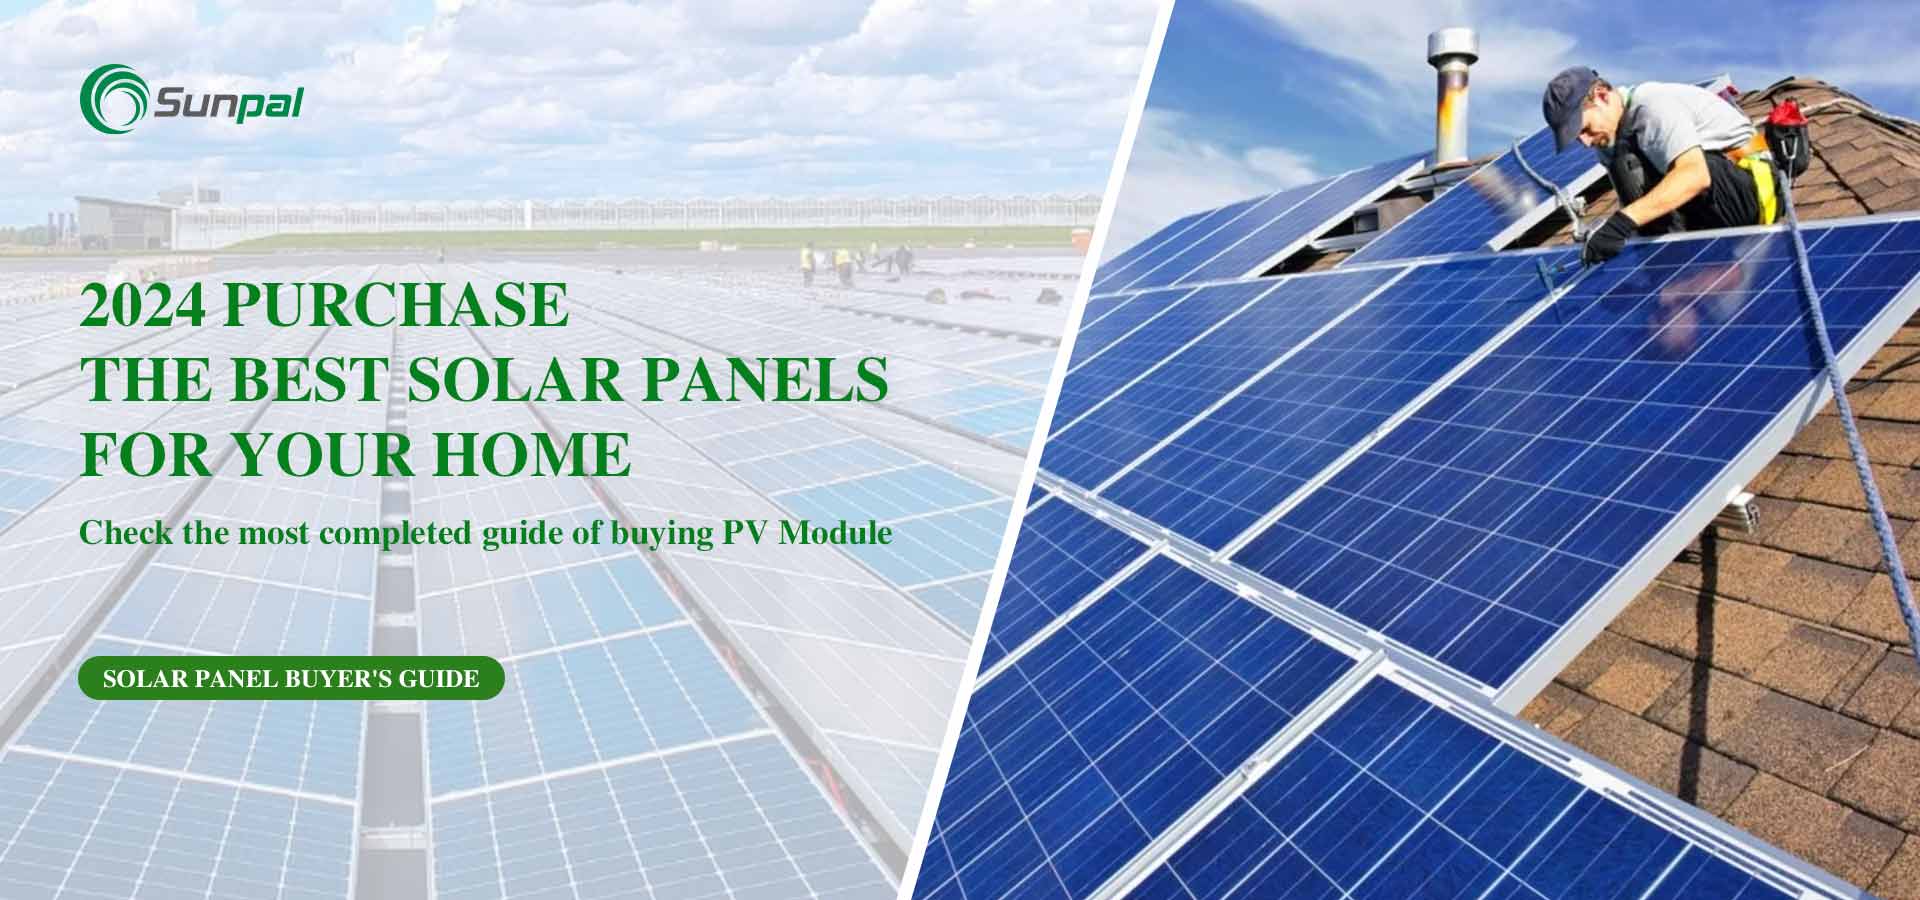 Meilleurs panneaux solaires pour votre maison en 2024 : guide de l'acheteur